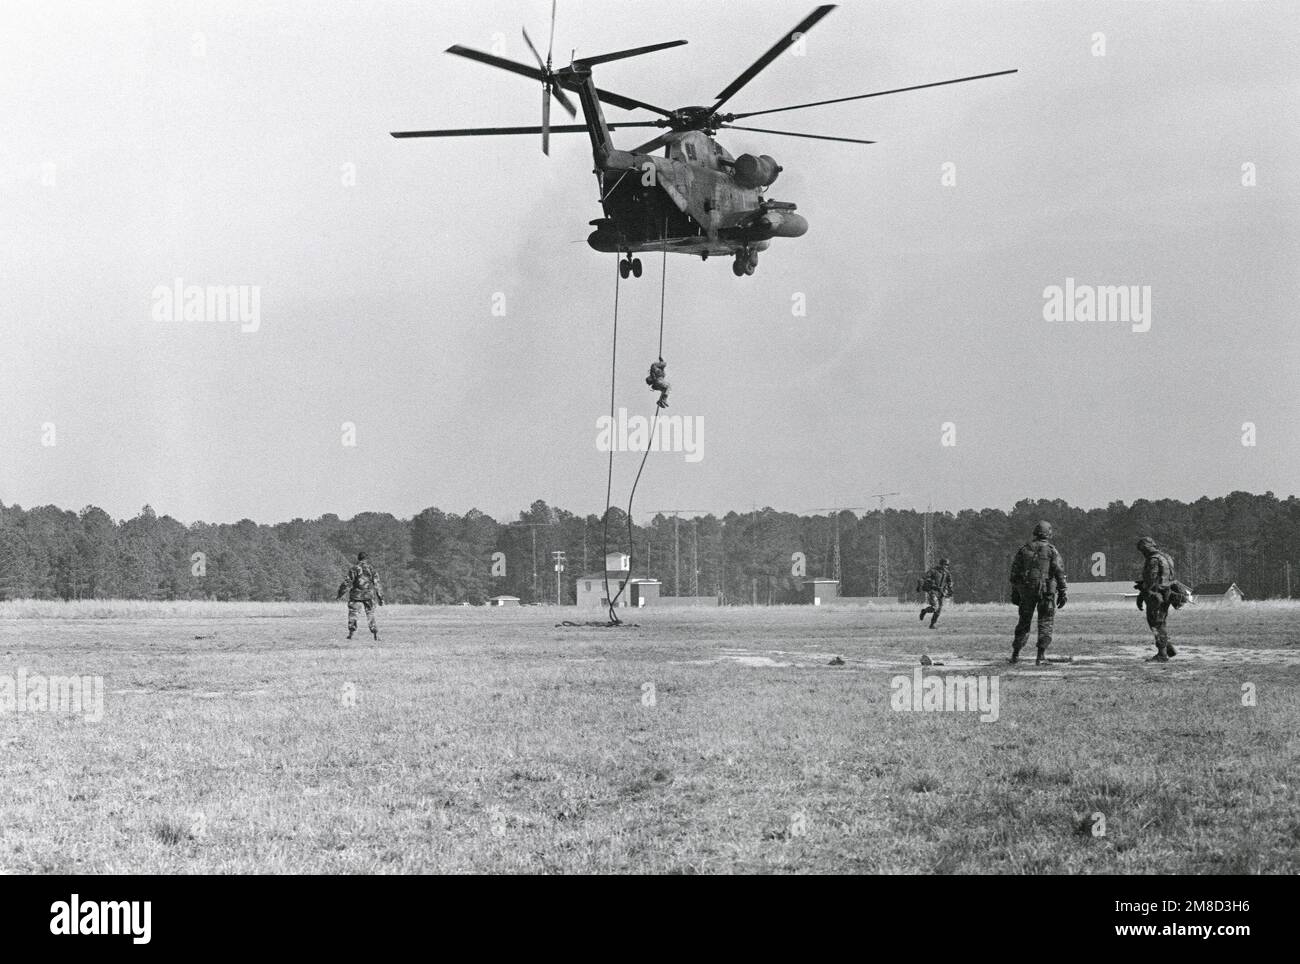 Un Marine desciende en rappel por una cuerda desde la parte trasera de un helicóptero CH-53D Sea Stallion. Base: MCAS, Cherry Point Estado: North Carolina (NC) País: Estados Unidos de América (USA) Foto de stock